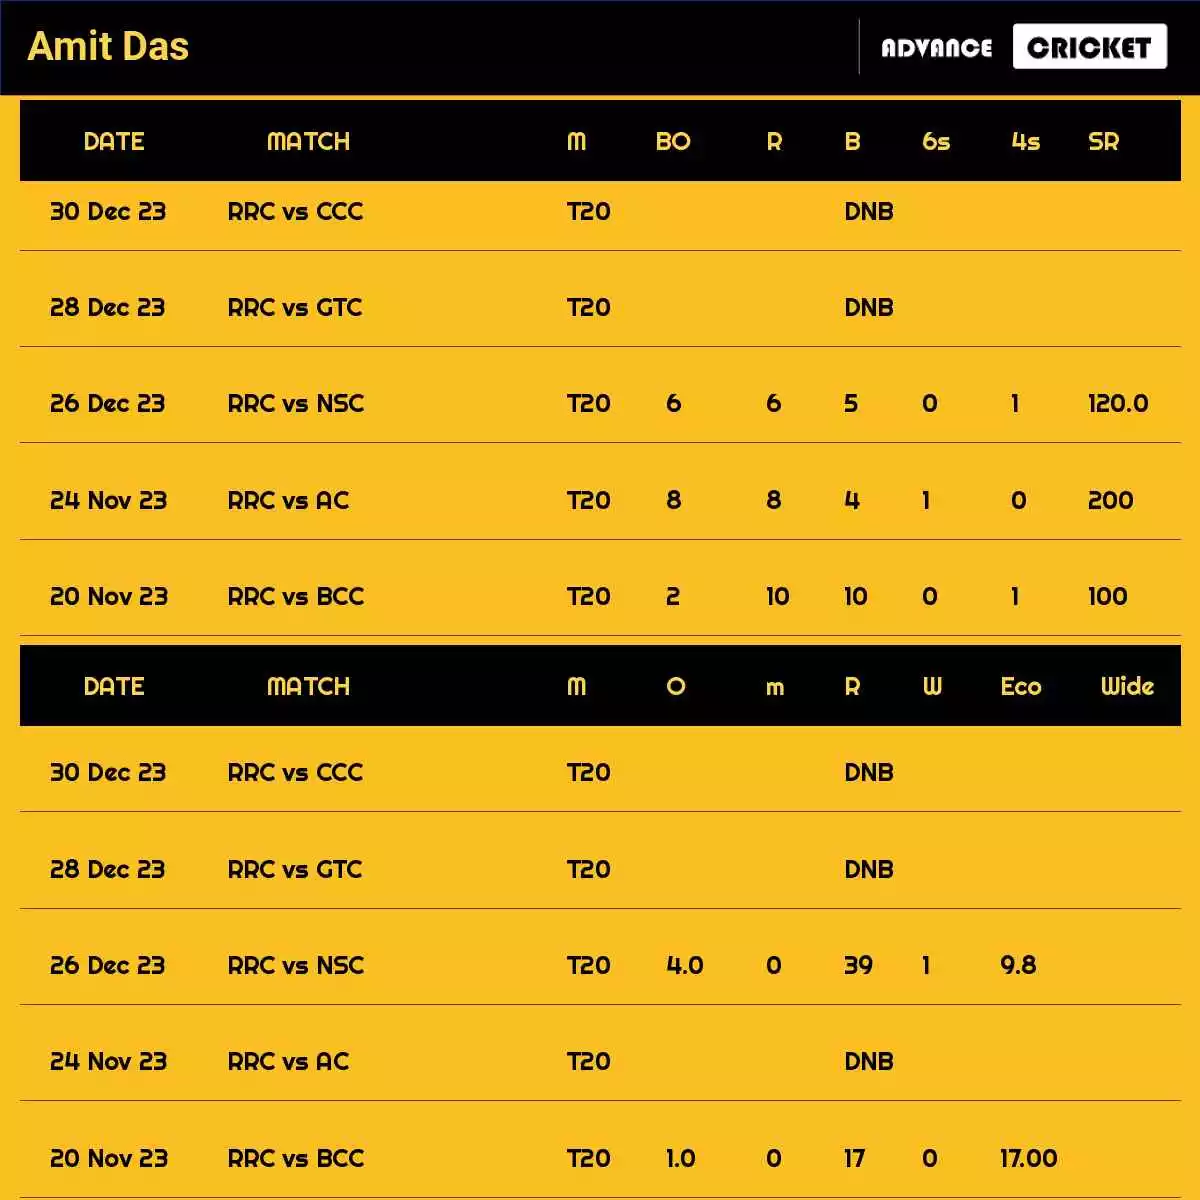 Amit Das Recent Matches Details Date Wise